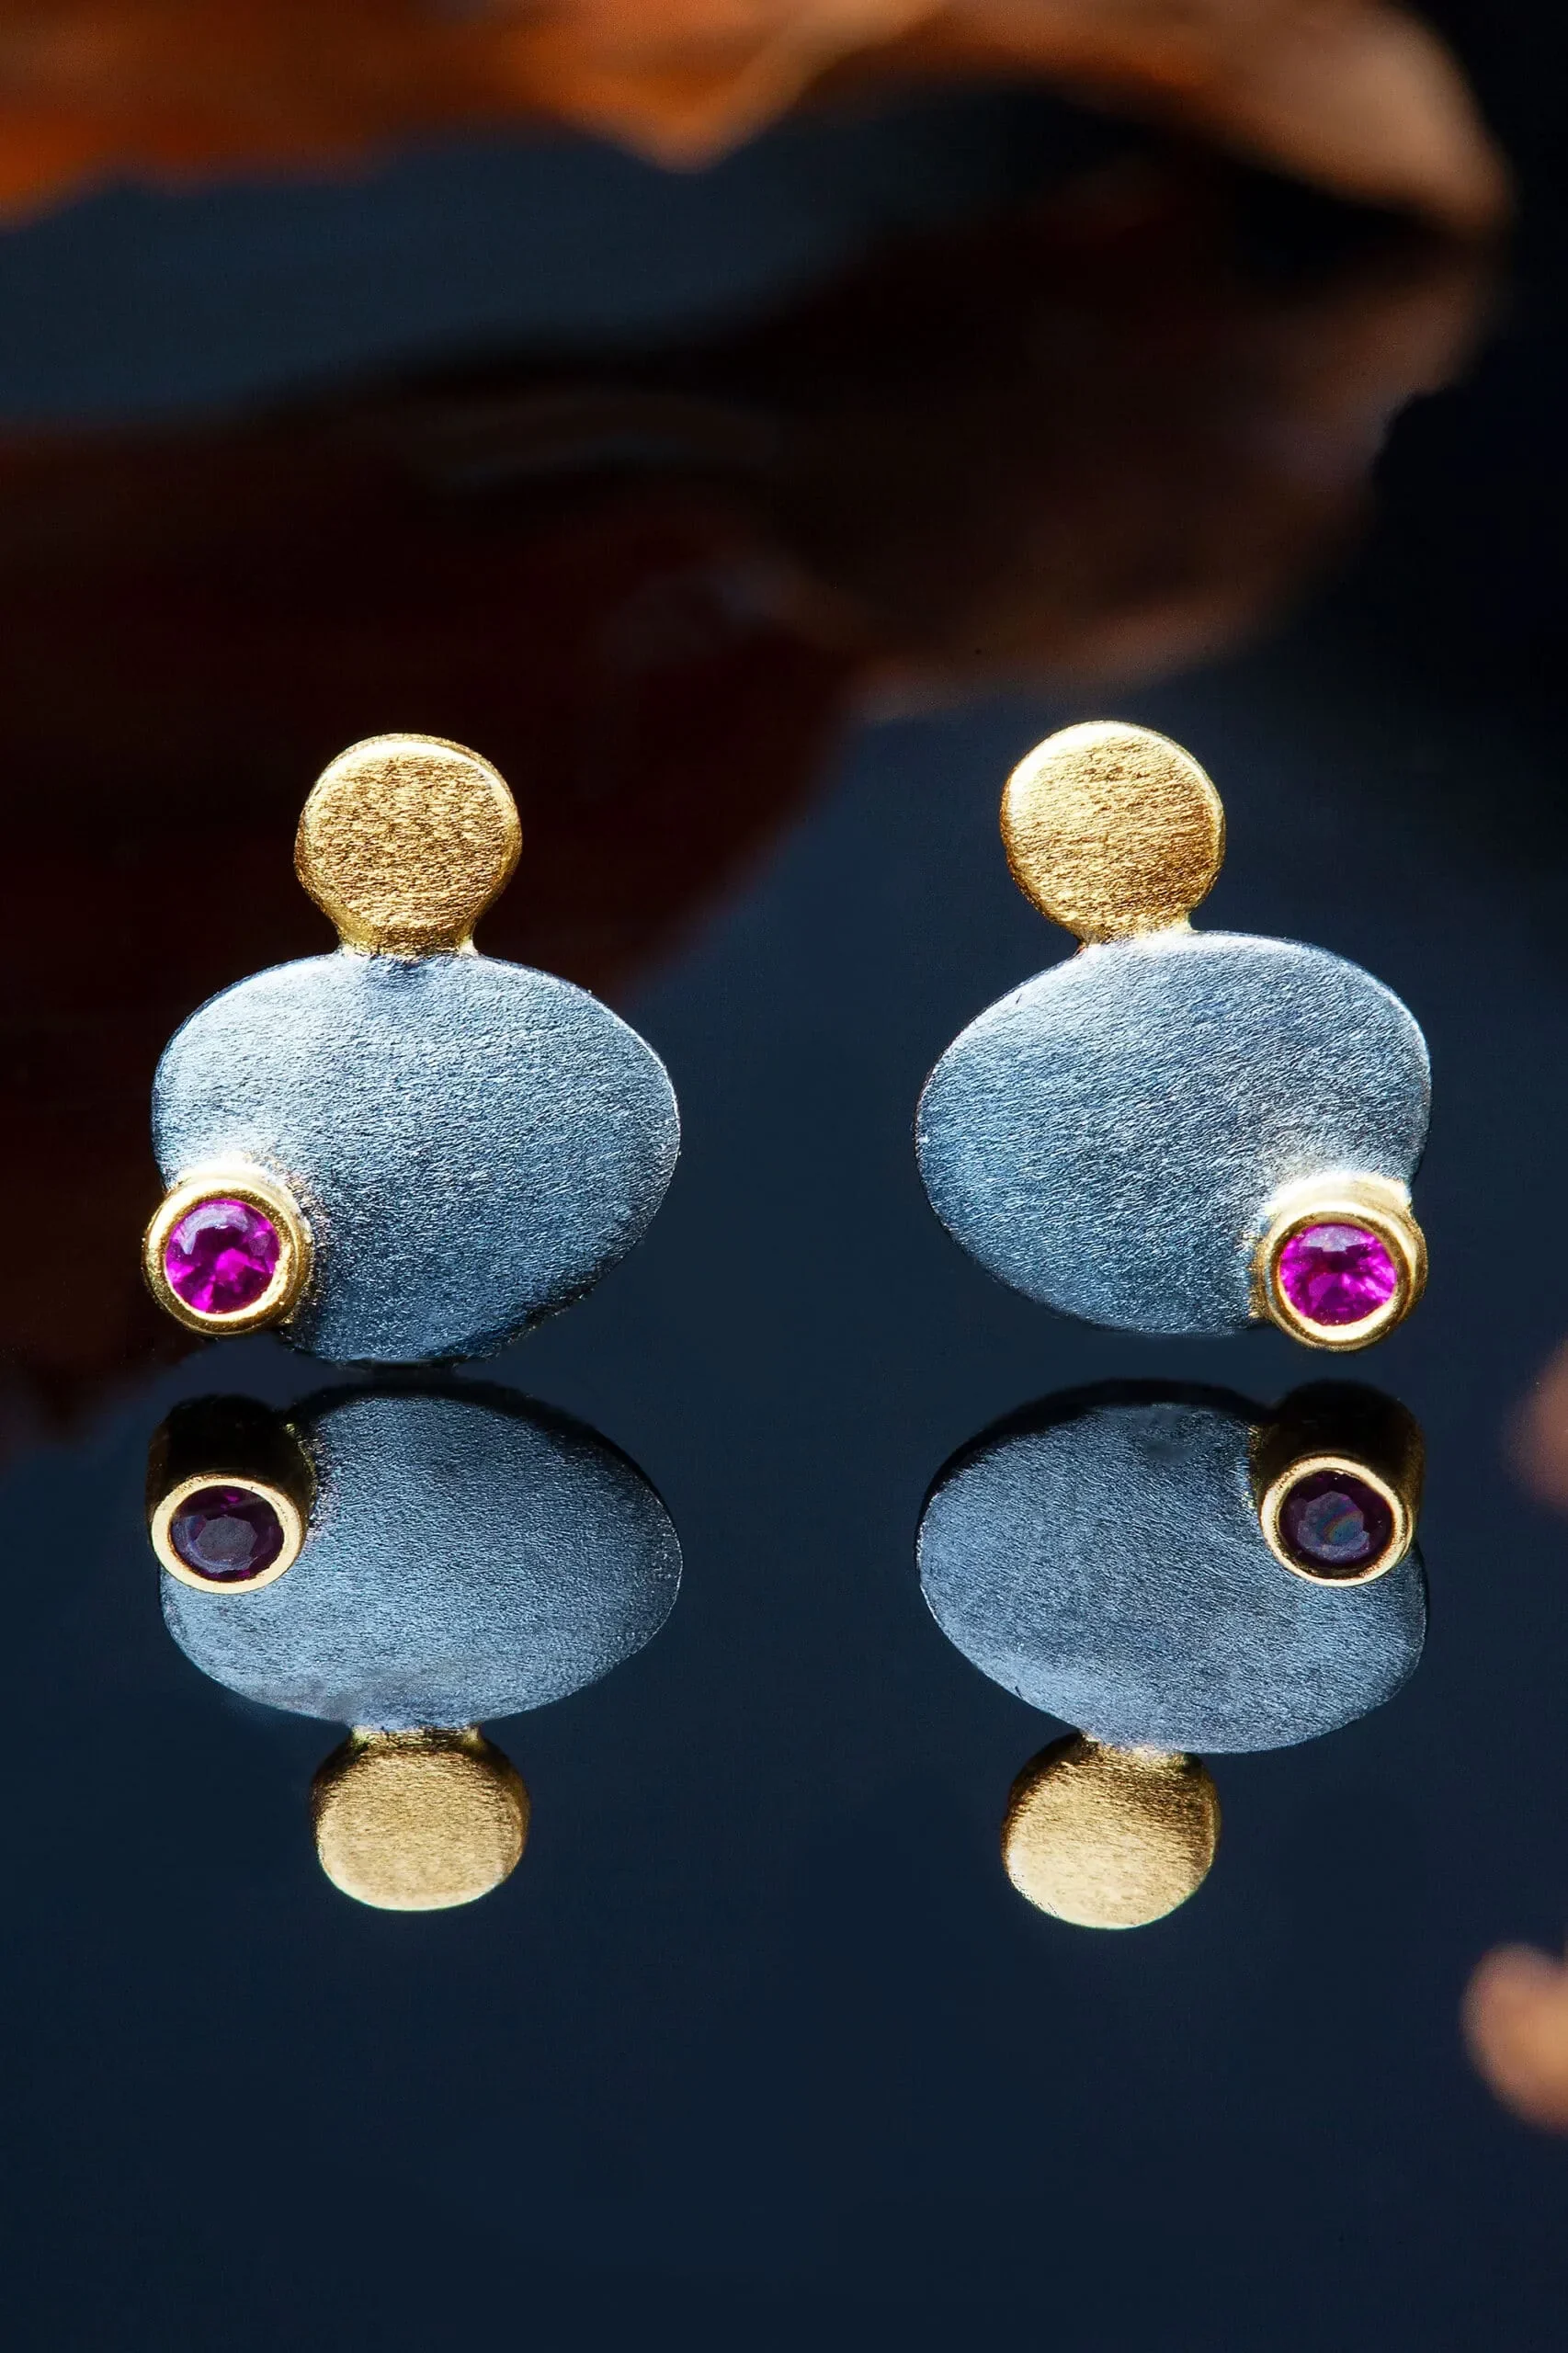 Χειροποίητα κοσμήματα | Κυκλικά ασημένια σκουλαρίκια με μαύρη επιπλατίνωση και επίχρυσες λεπτομέρειες, συνδυασμένα με ζιργκόν gallery 1